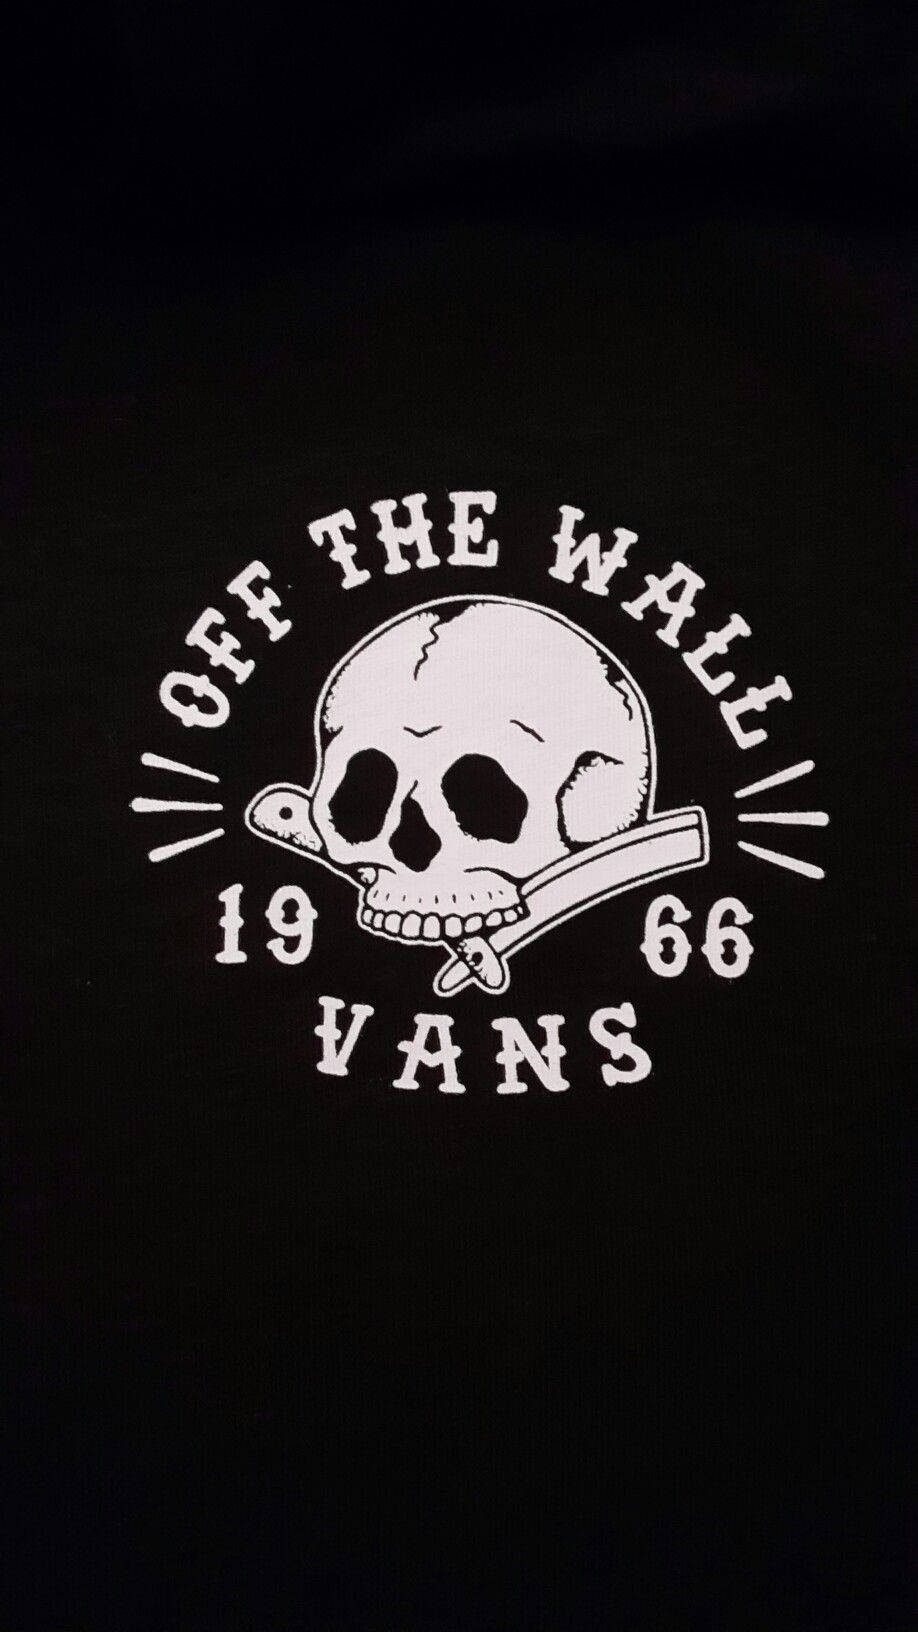 Vans Off The Wall Skull Logo Wallpaper